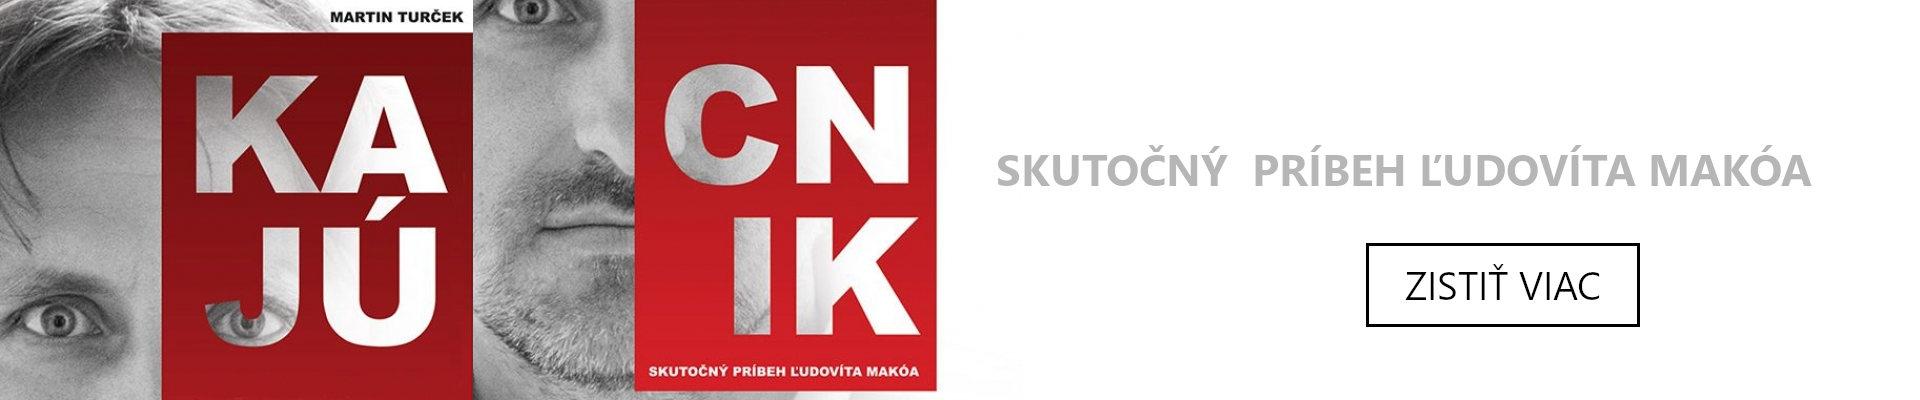 Kniha: Kajúcnik - Skutočný príbeh Ľudovíta Makóa - 1. vydanie - Martin Turček